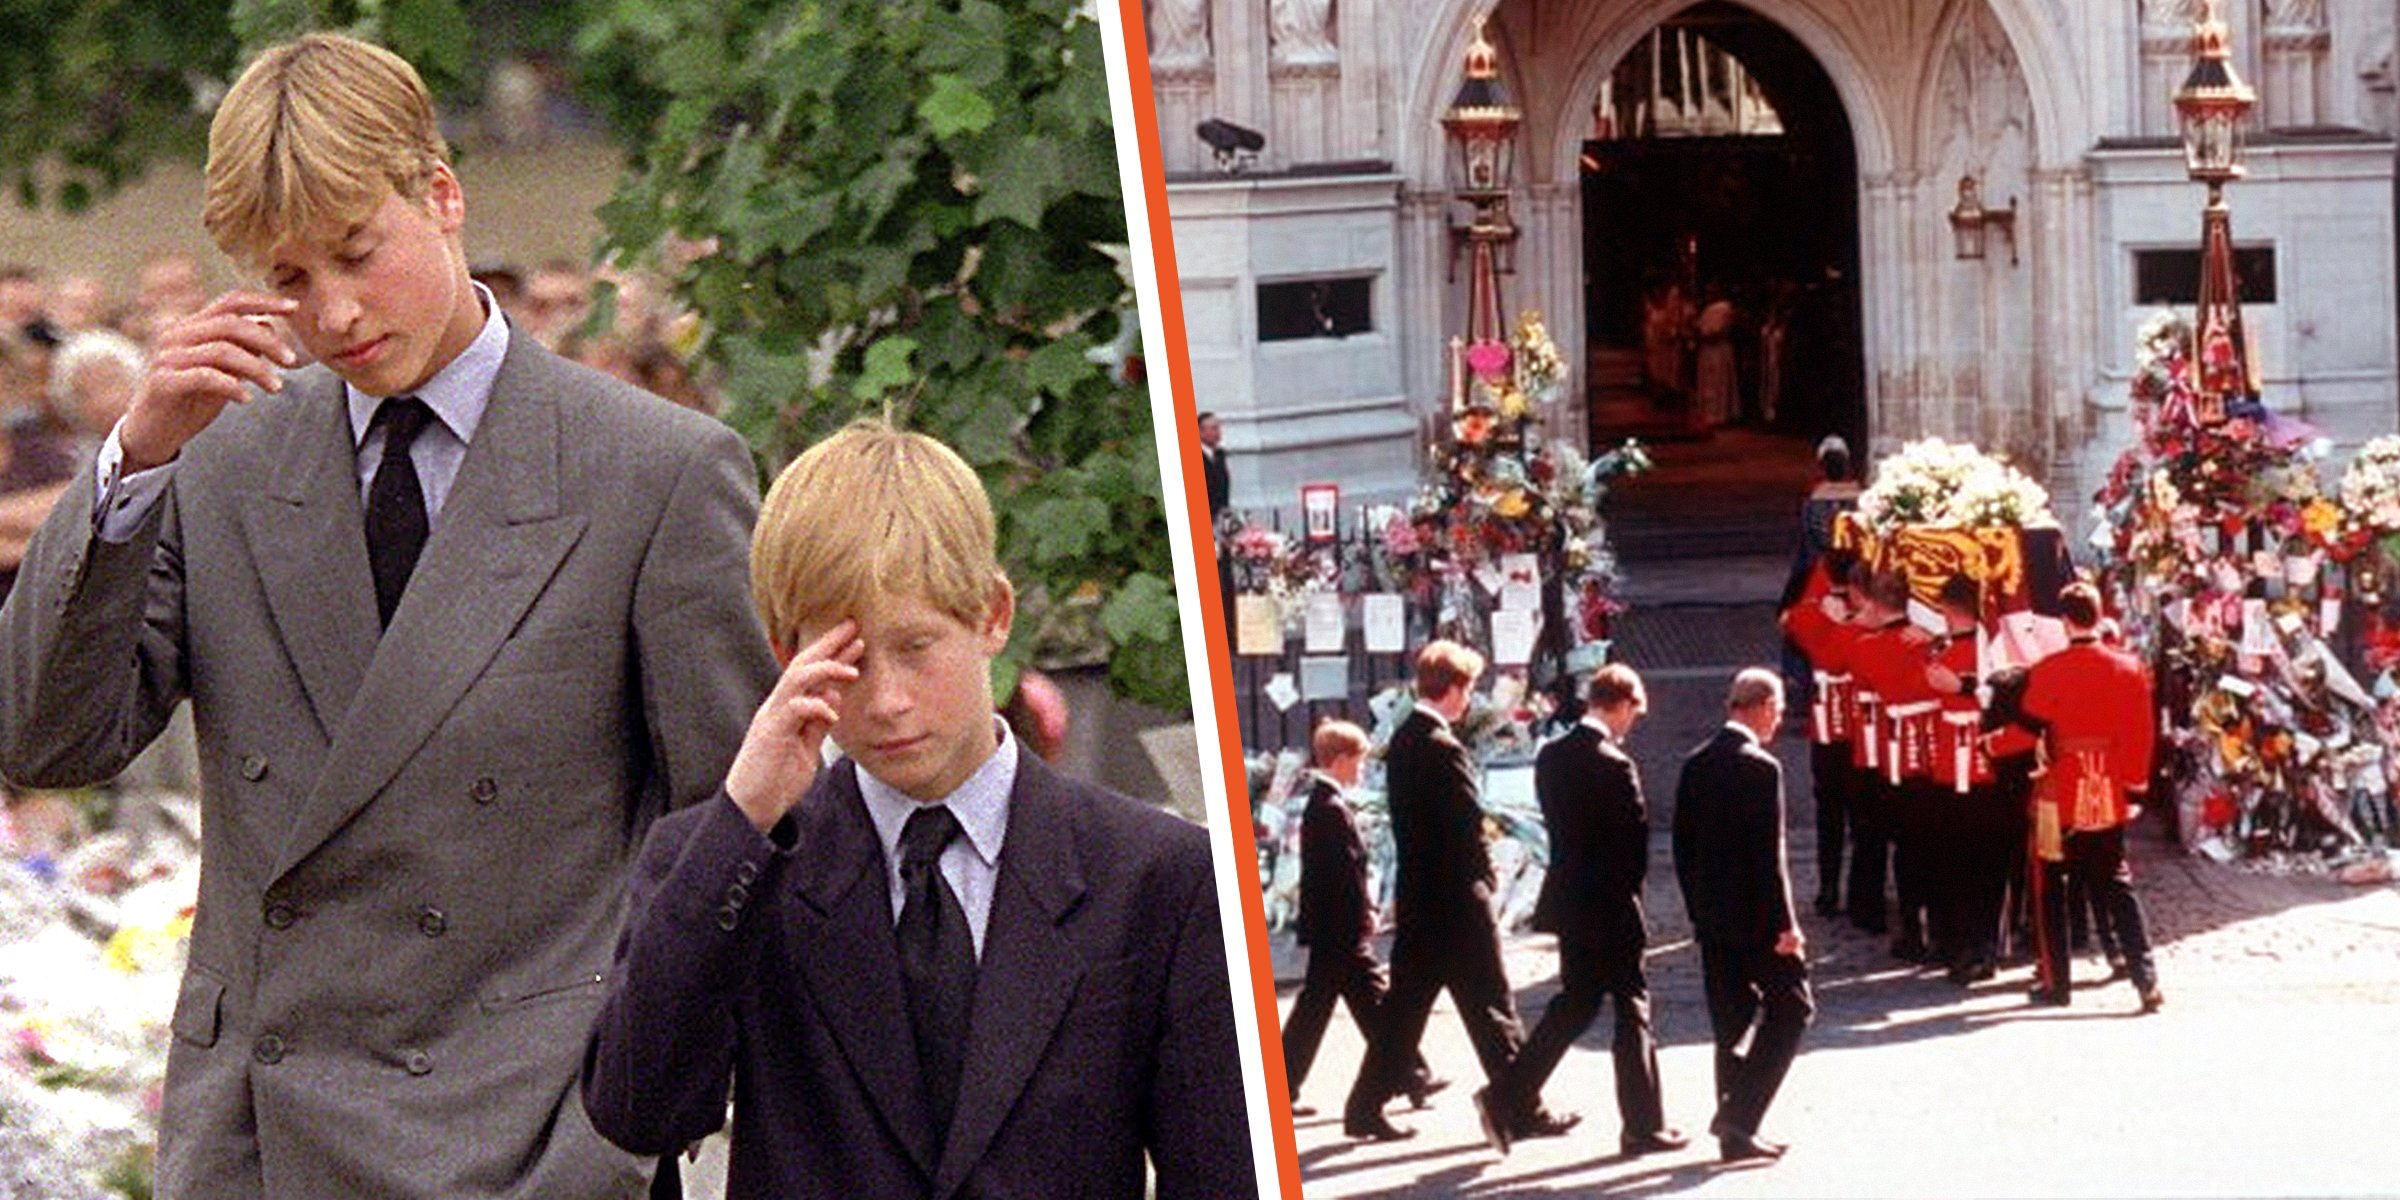 Los príncipes William y Harry el día antes del funeral de su madre [Izquierda]; William y Harry detrás del ataúd de su madre el día de su funeral, el 6 de septiembre de 1997 [Derecha]. | Foto: Getty Images